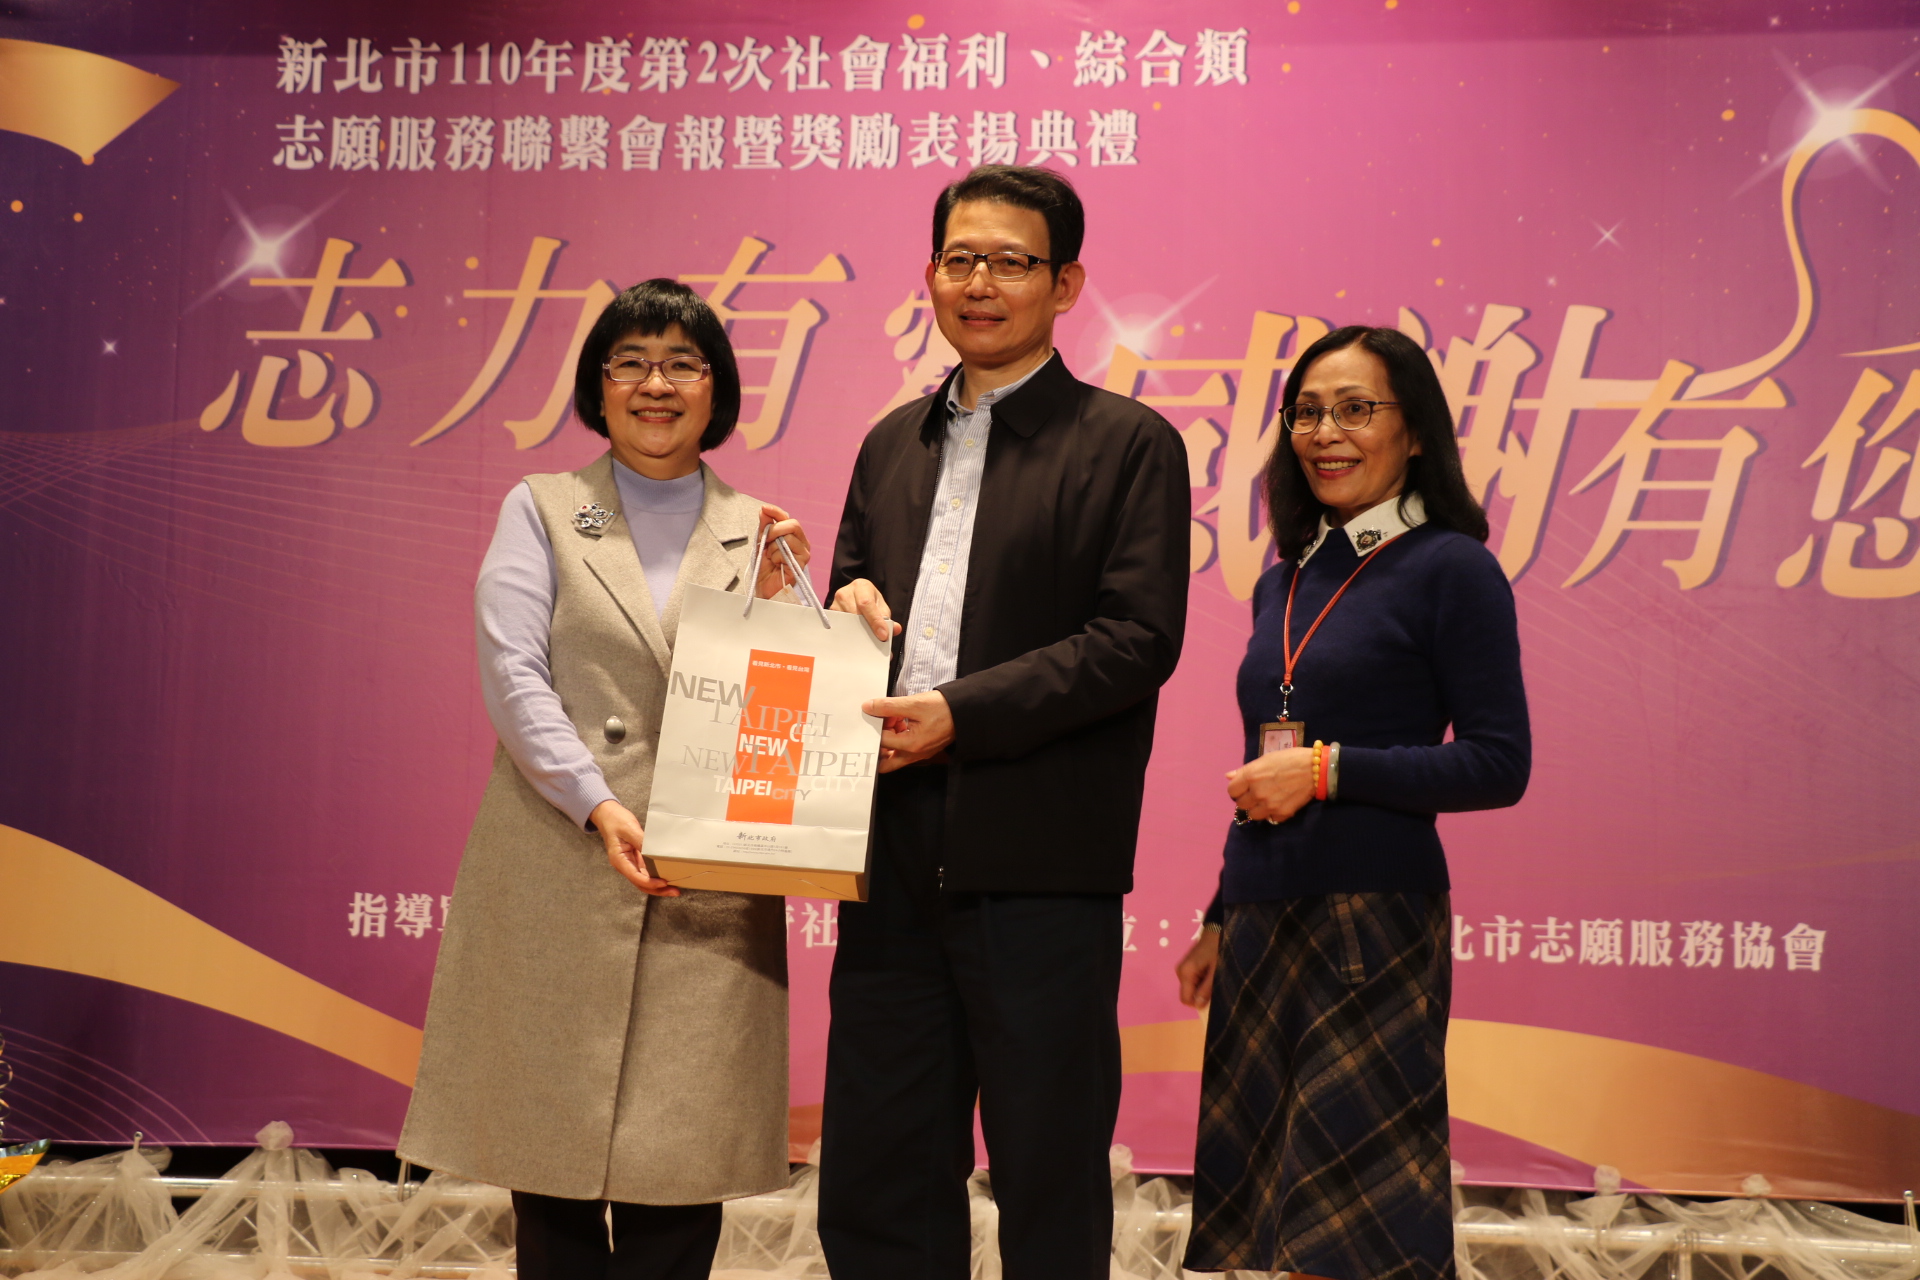 社會局長張錦麗（左）感謝羅紹和（中）分享、鼓勵社福志工